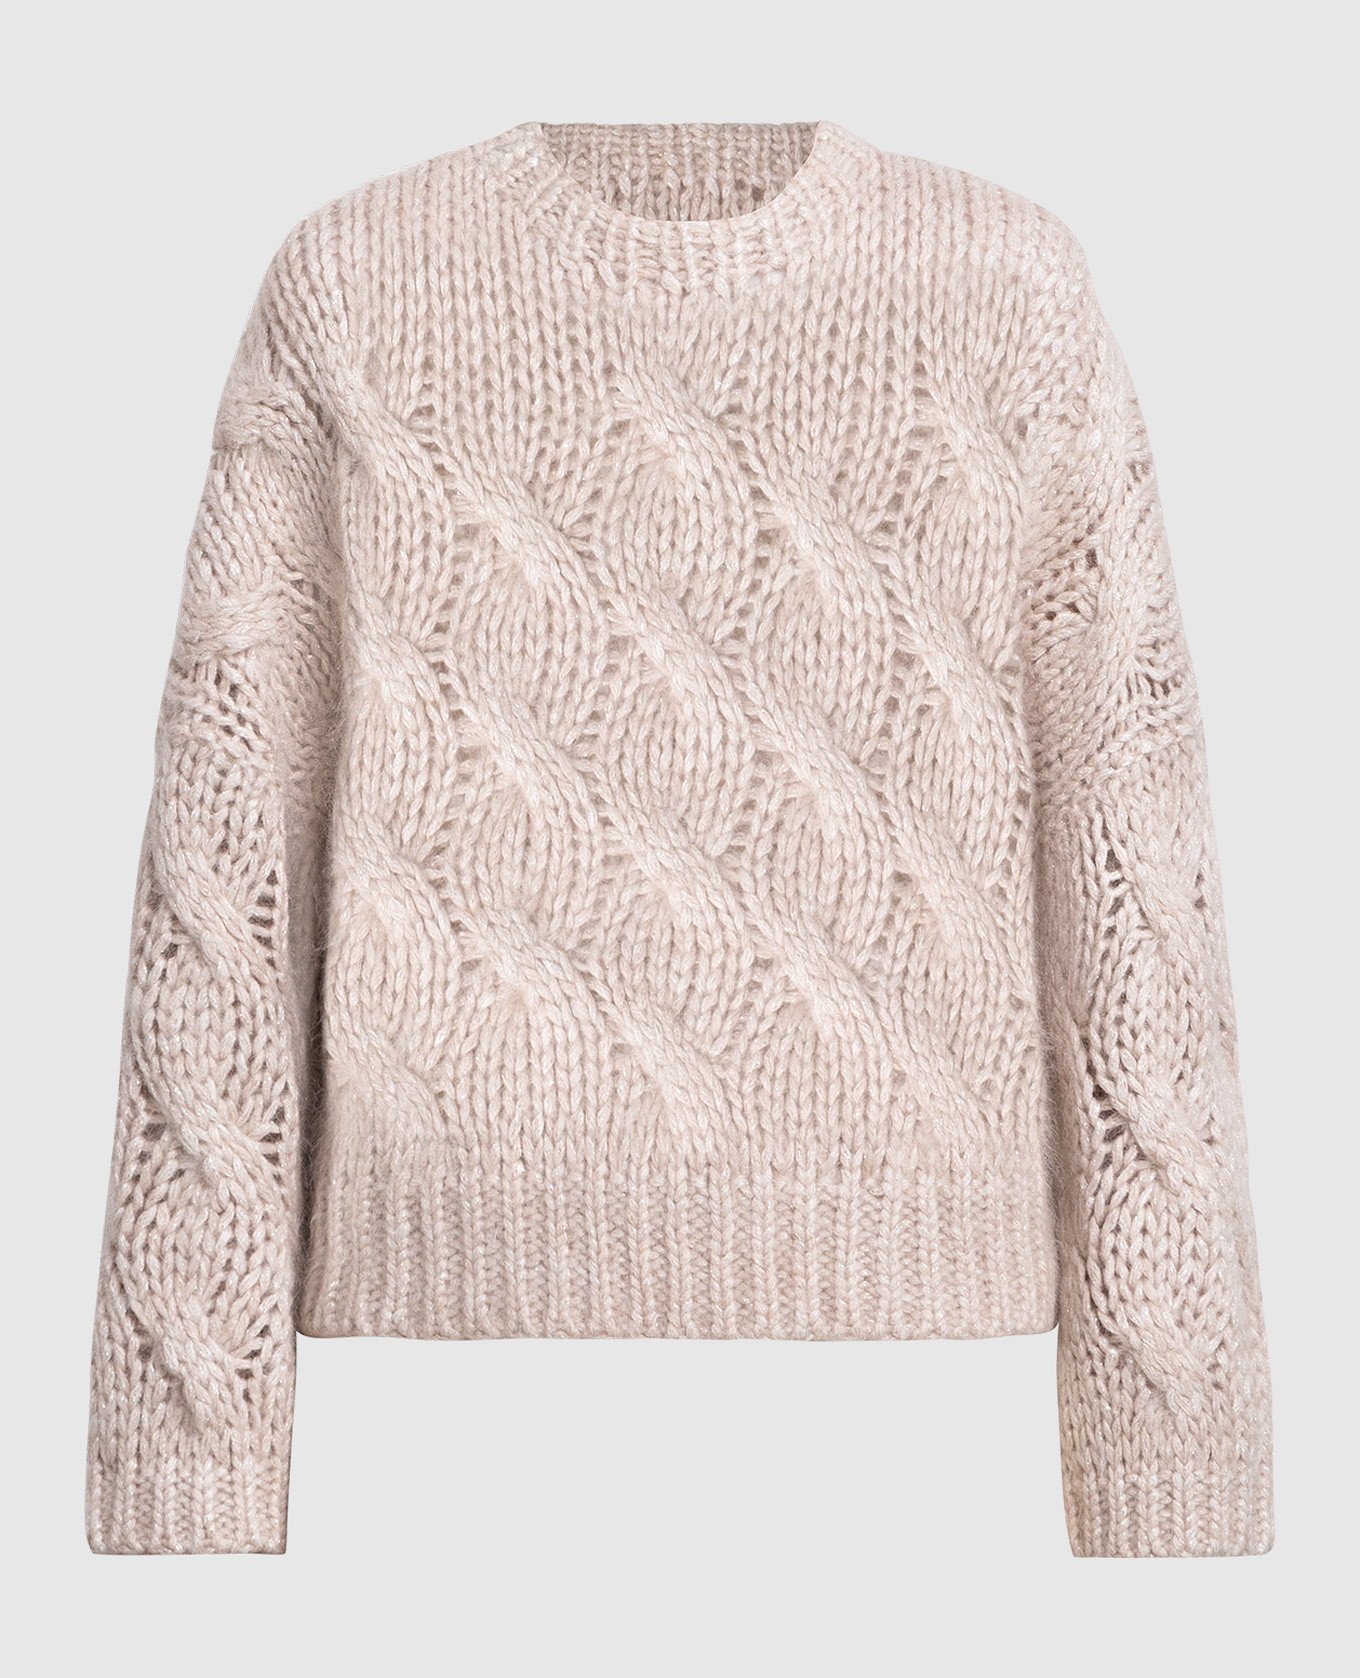 Beige sweater with lurex